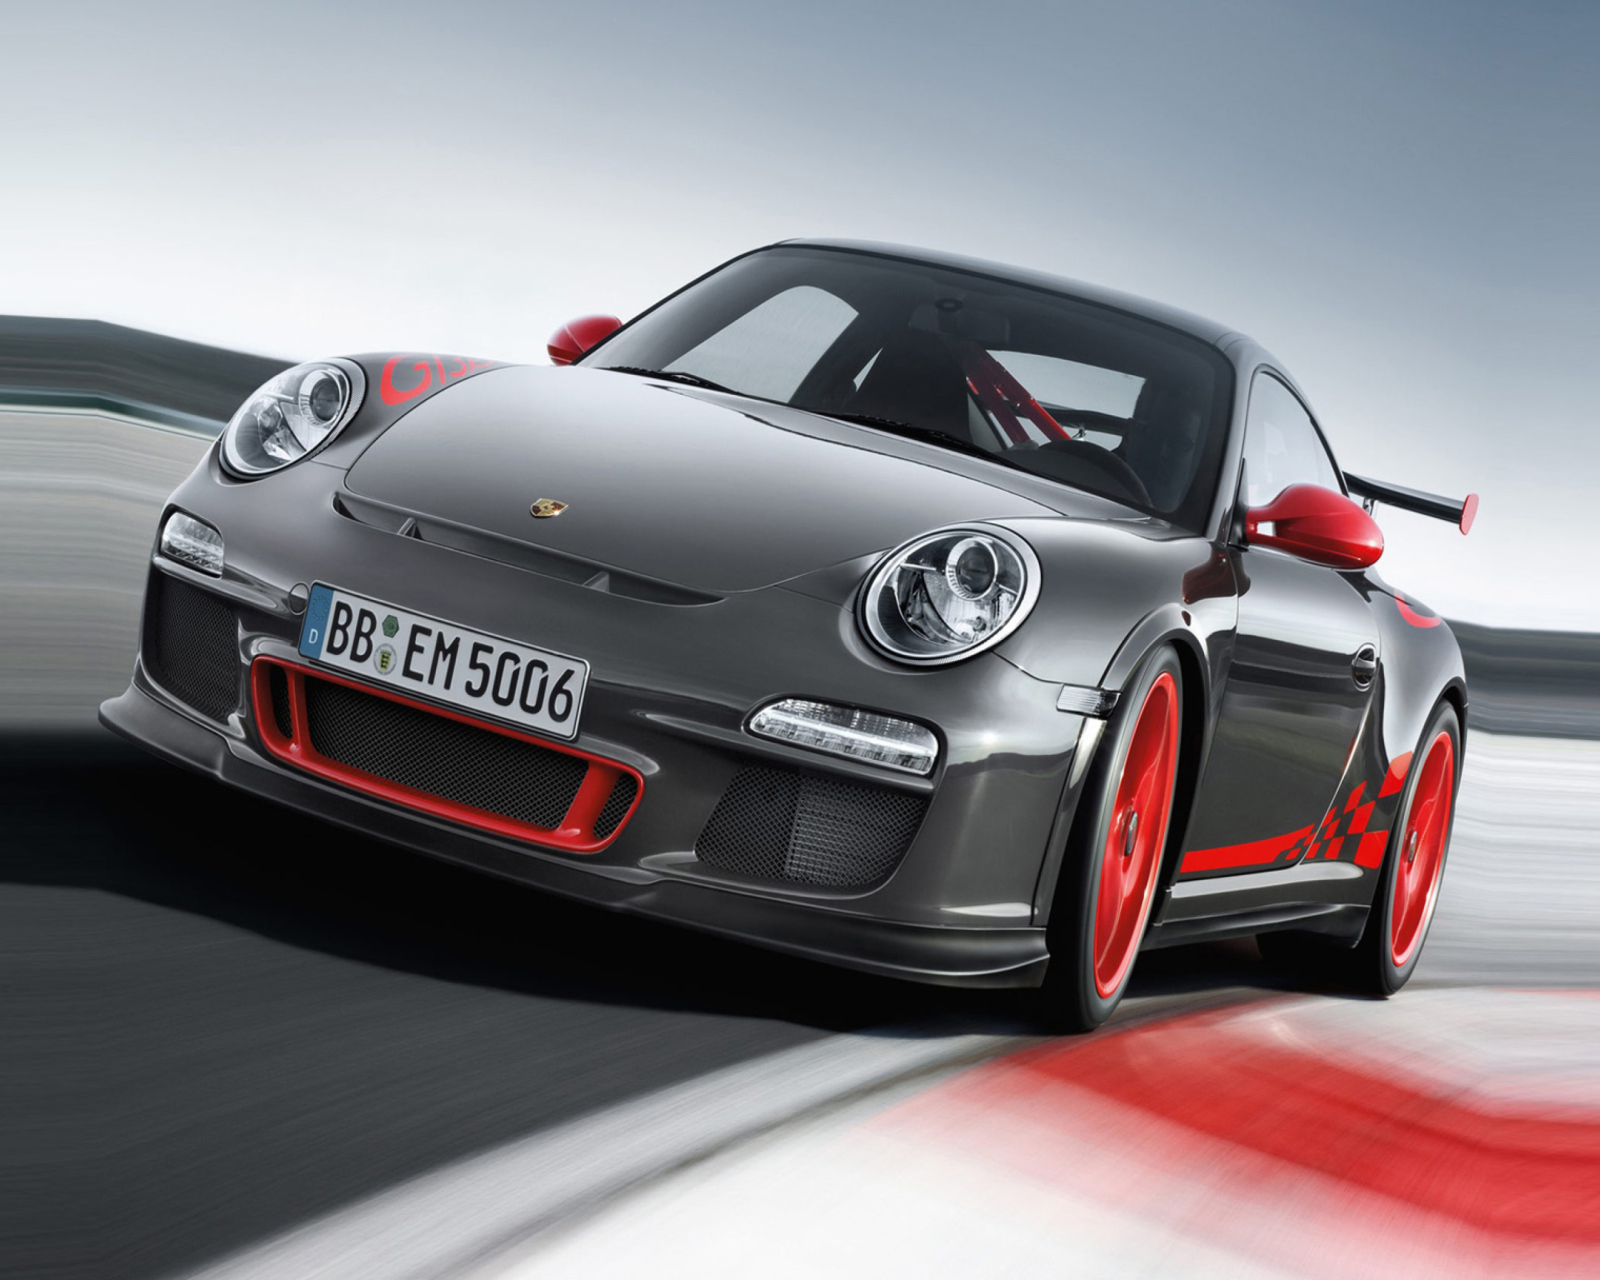 Fondo de pantalla Porsche 911 1600x1280